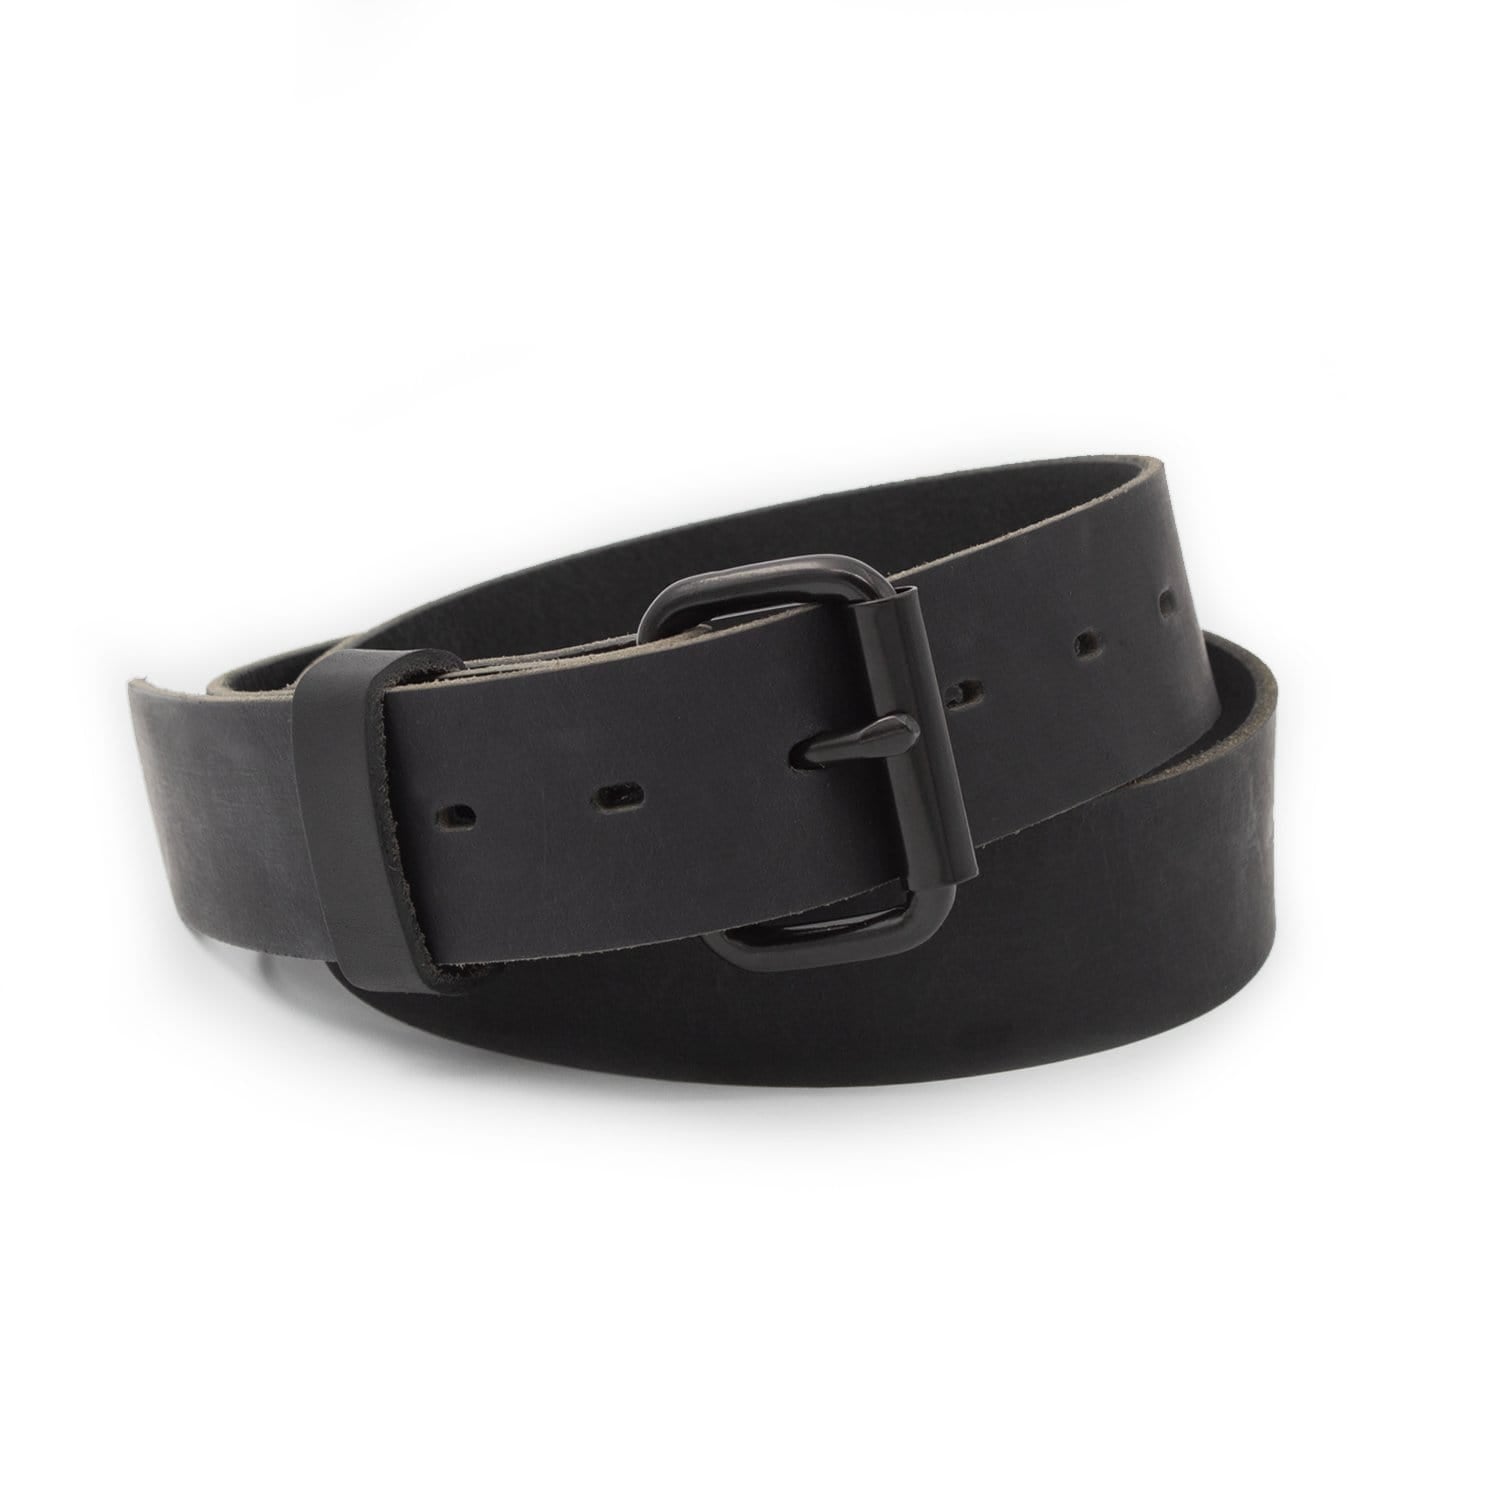 BRIGHTON Leather Belt Black– Wag N' Purr Shop